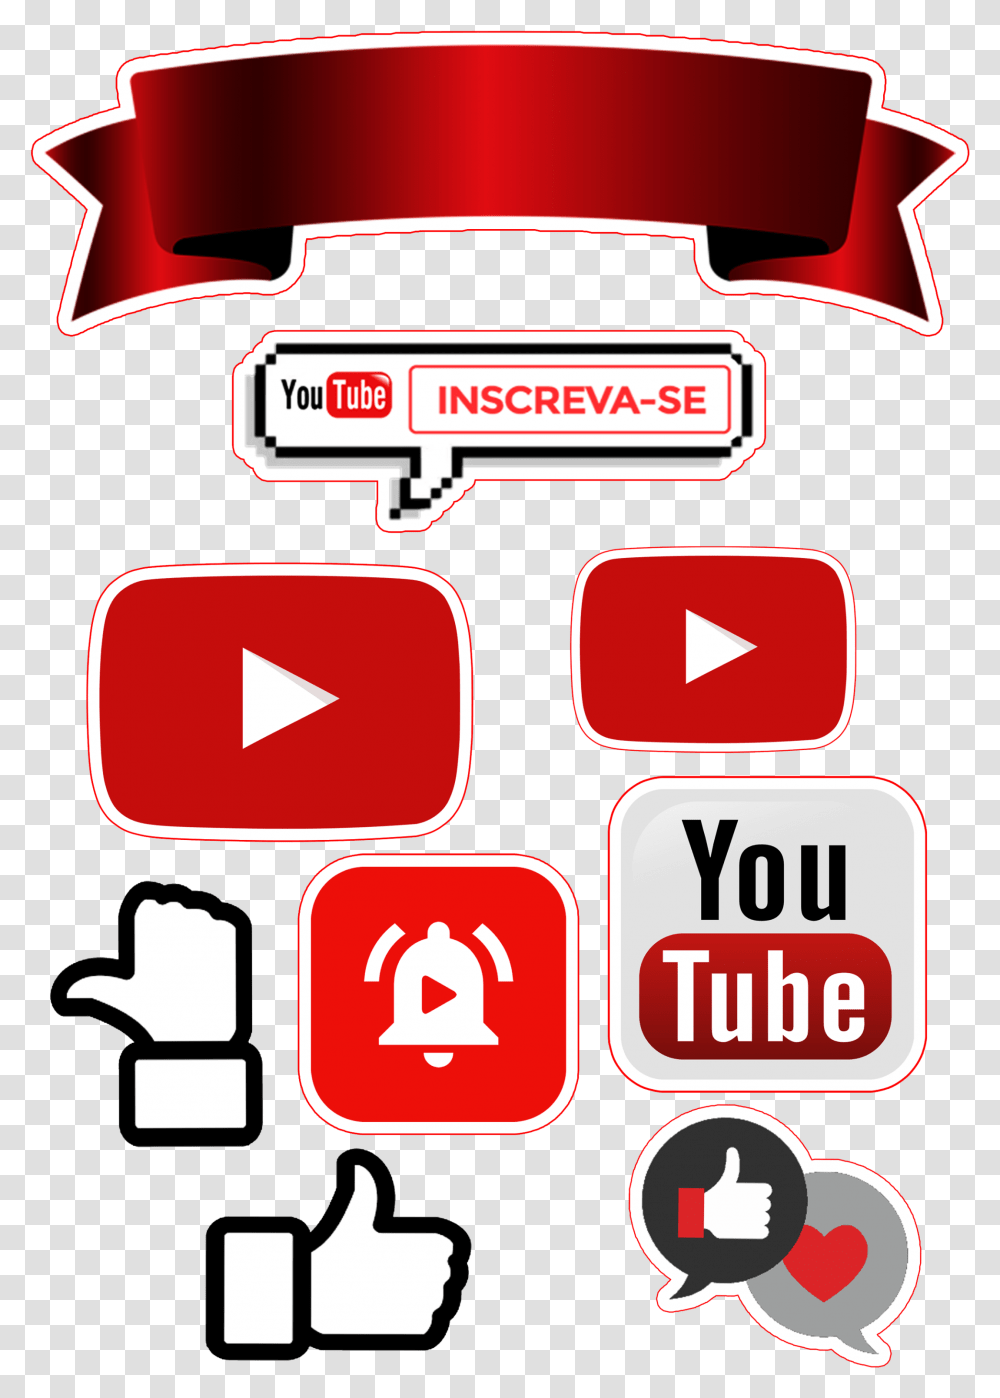 De Bolo Decorativo Com Tema Youtuber Topo De Bolo Youtube, Label, Text, Logo, Symbol Transparent Png